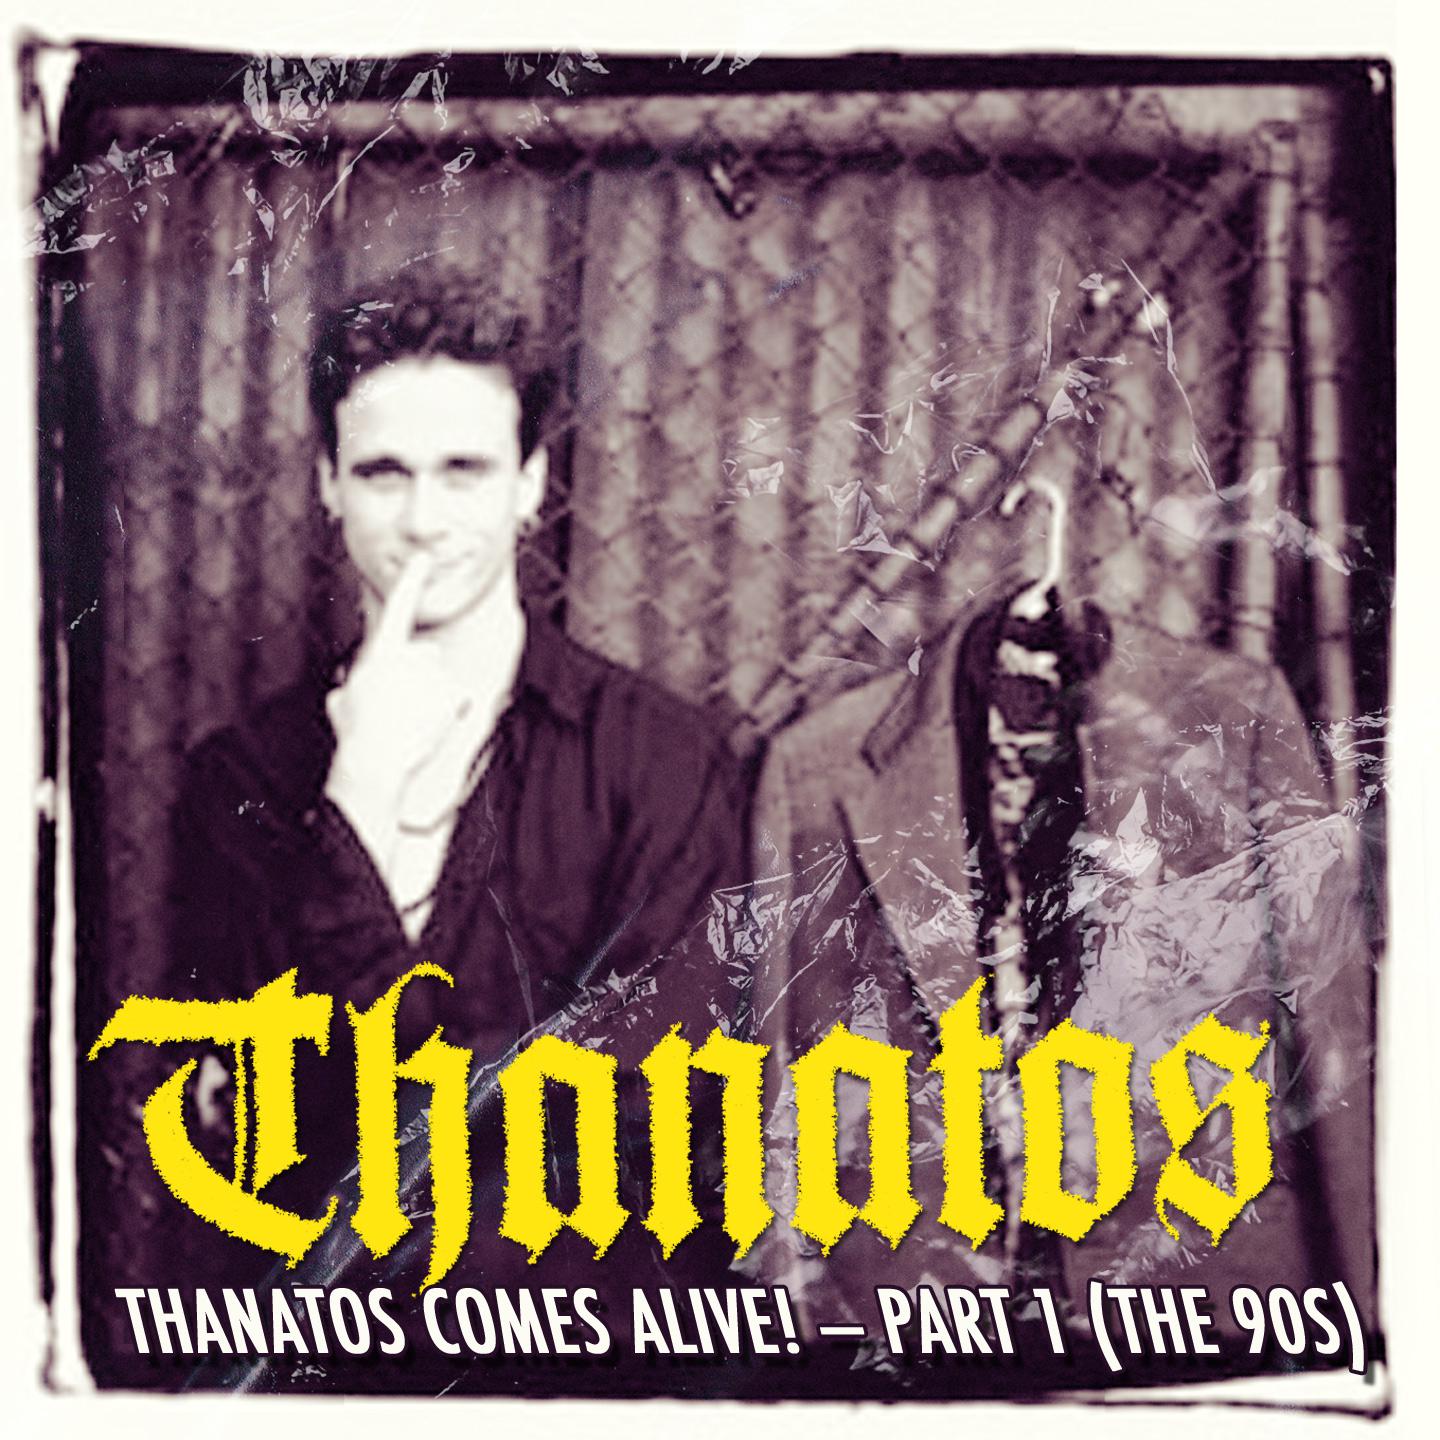 Thanatos - Von Stauffenberg (Live at Tremont Music Hall, Charlotte NC, ’96)